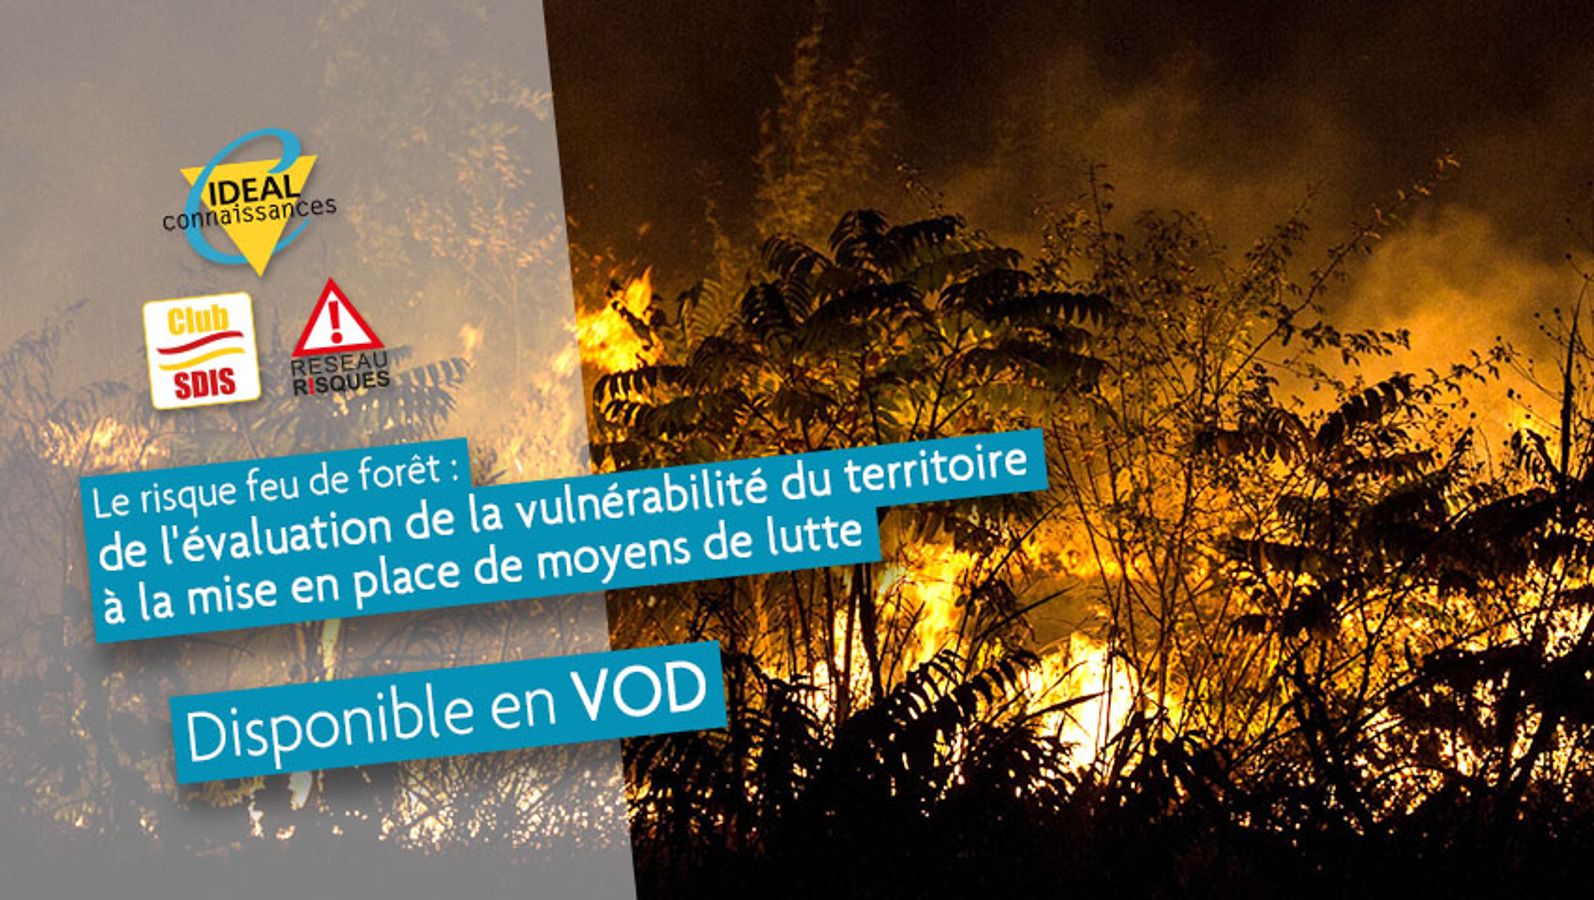 Le risque feu de forêt: De l'évaluation de la vulnérabilité du territoire à la mise en place de moyens de lutte